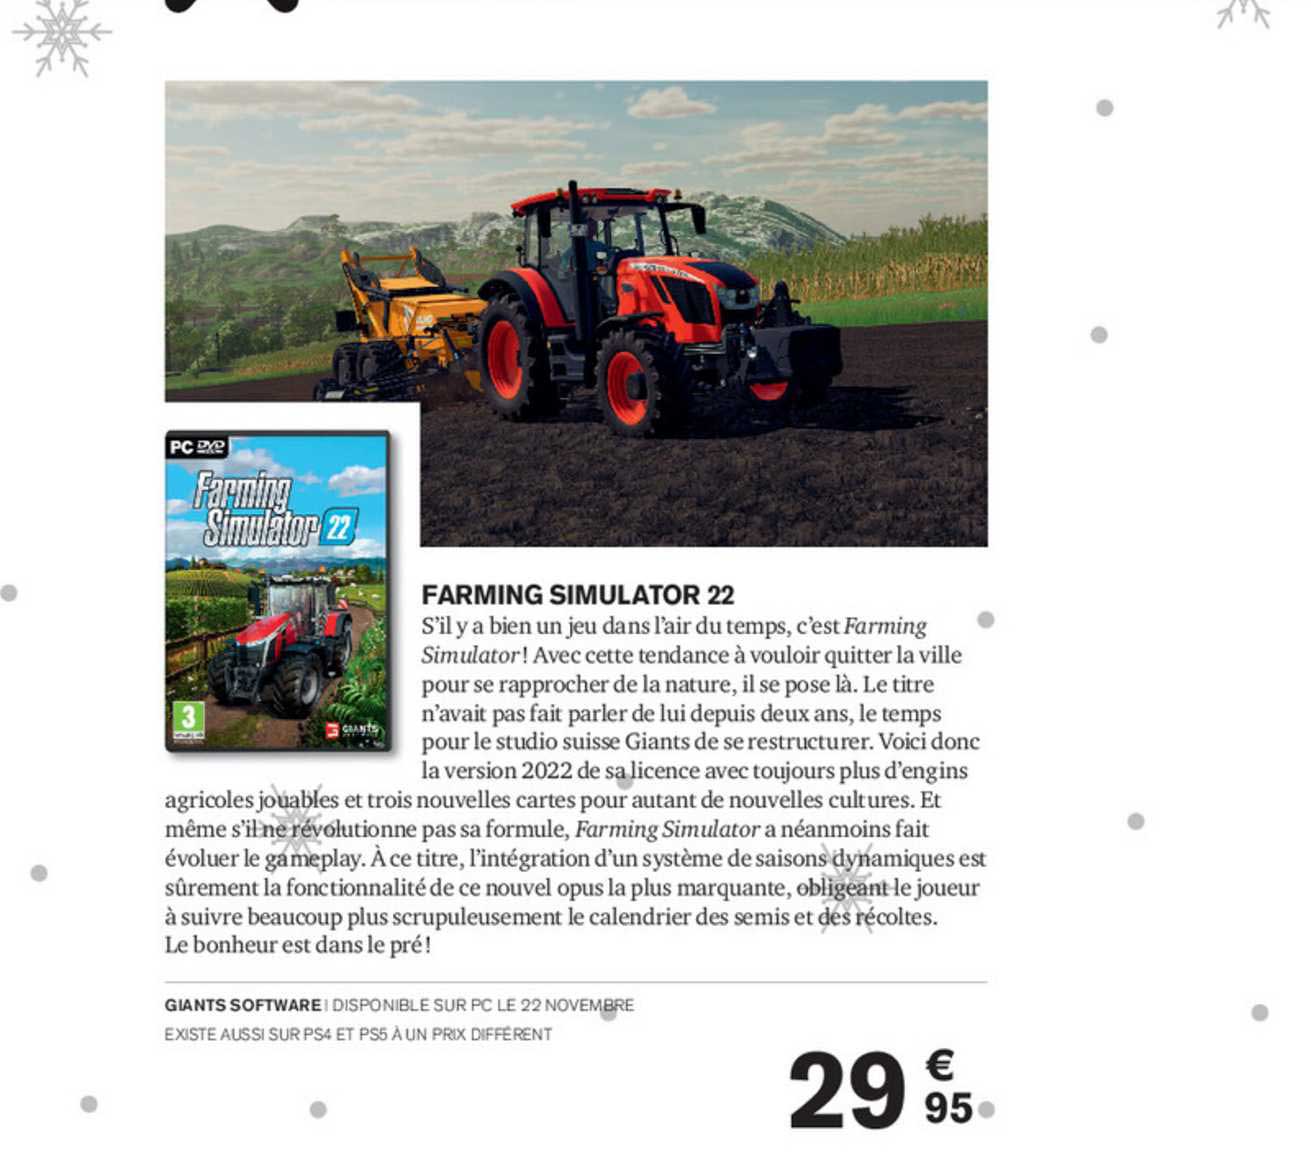 promo-farming-simulator-22-chez-carrefour-icatalogue-fr